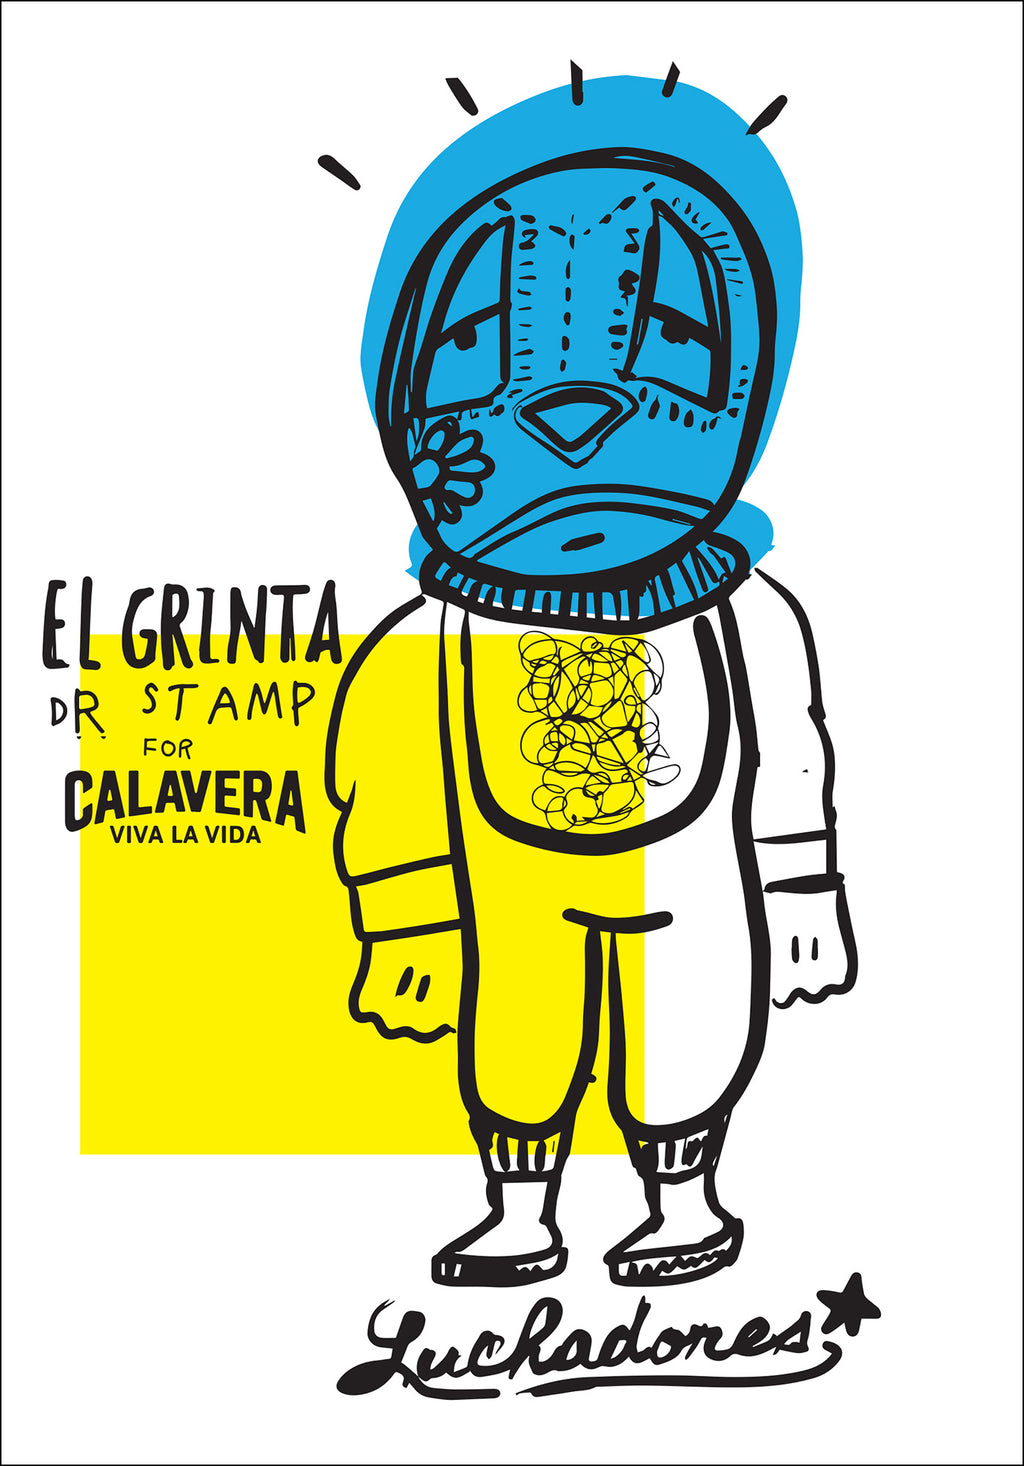 Poster con wrestler messicano ideato e creato da Dr. Stamp 